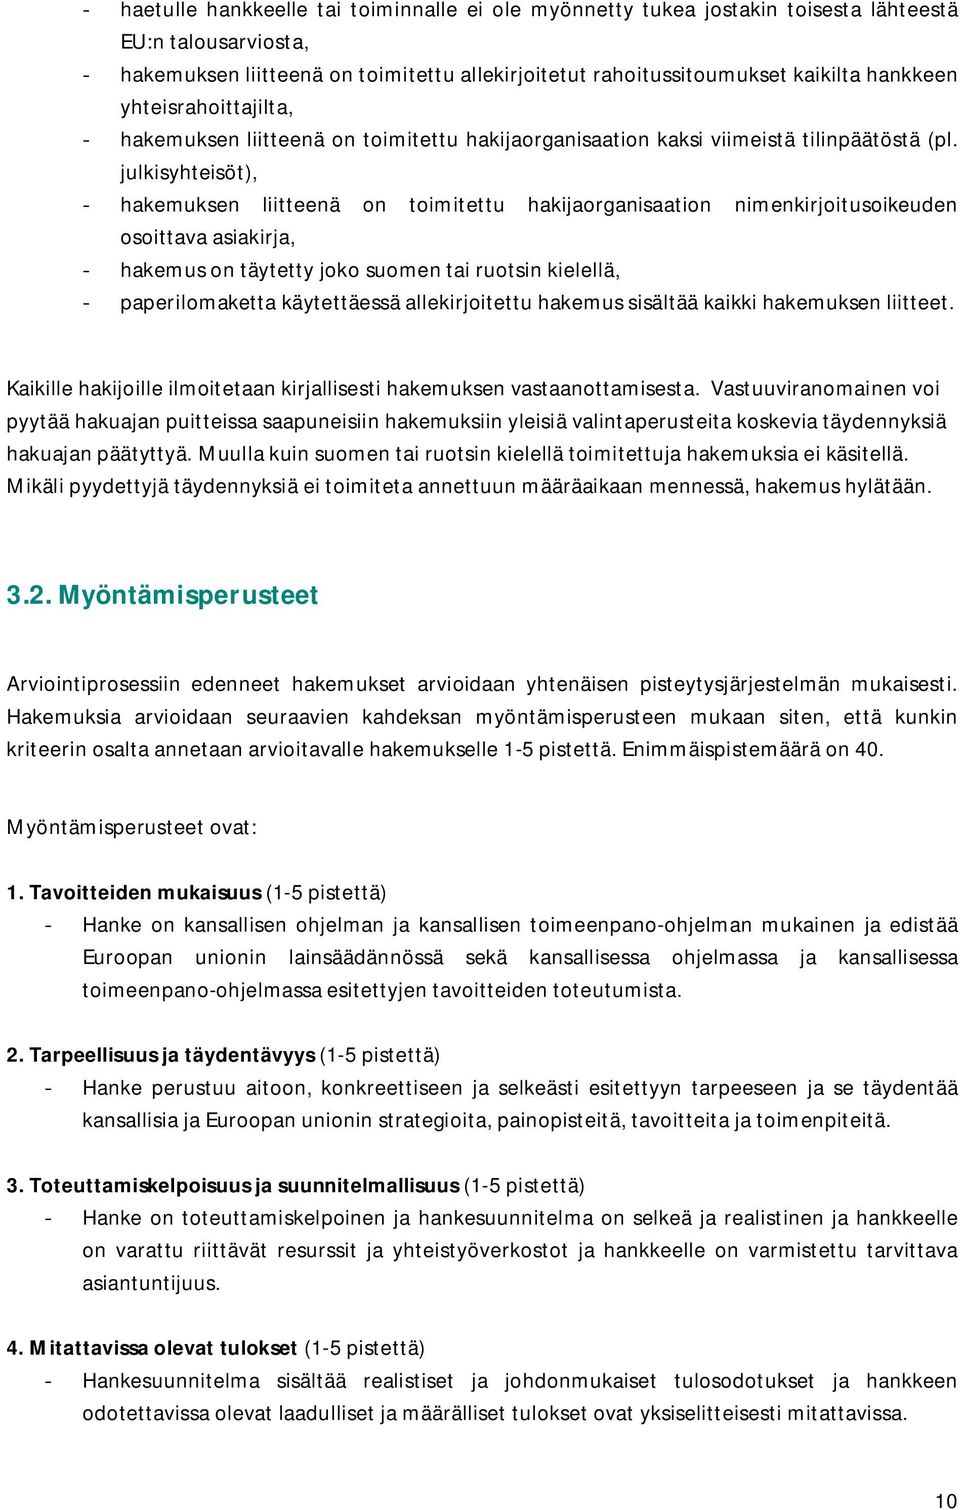 julkisyhteisöt), - hakemuksen liitteenä on toimitettu hakijaorganisaation nimenkirjoitusoikeuden osoittava asiakirja, - hakemus on täytetty joko suomen tai ruotsin kielellä, - paperilomaketta